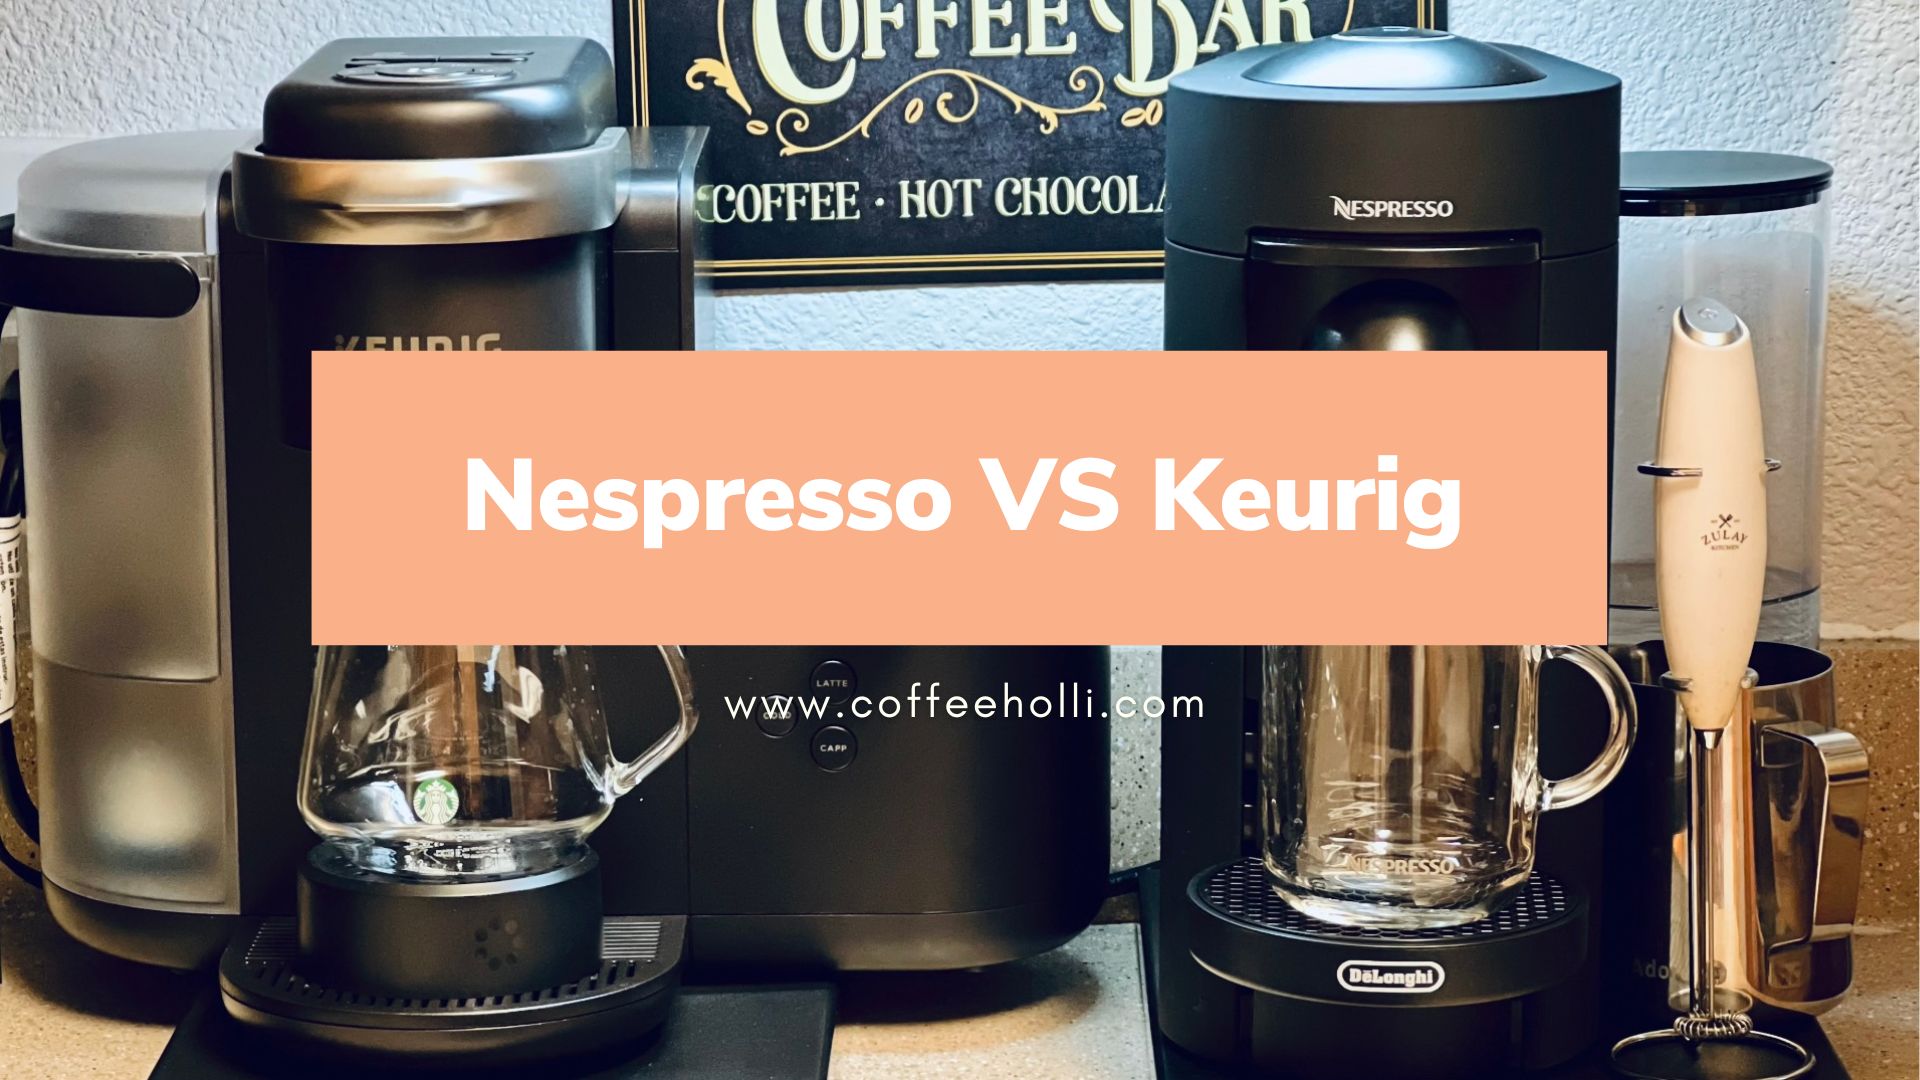 Nespresso VS Keurig